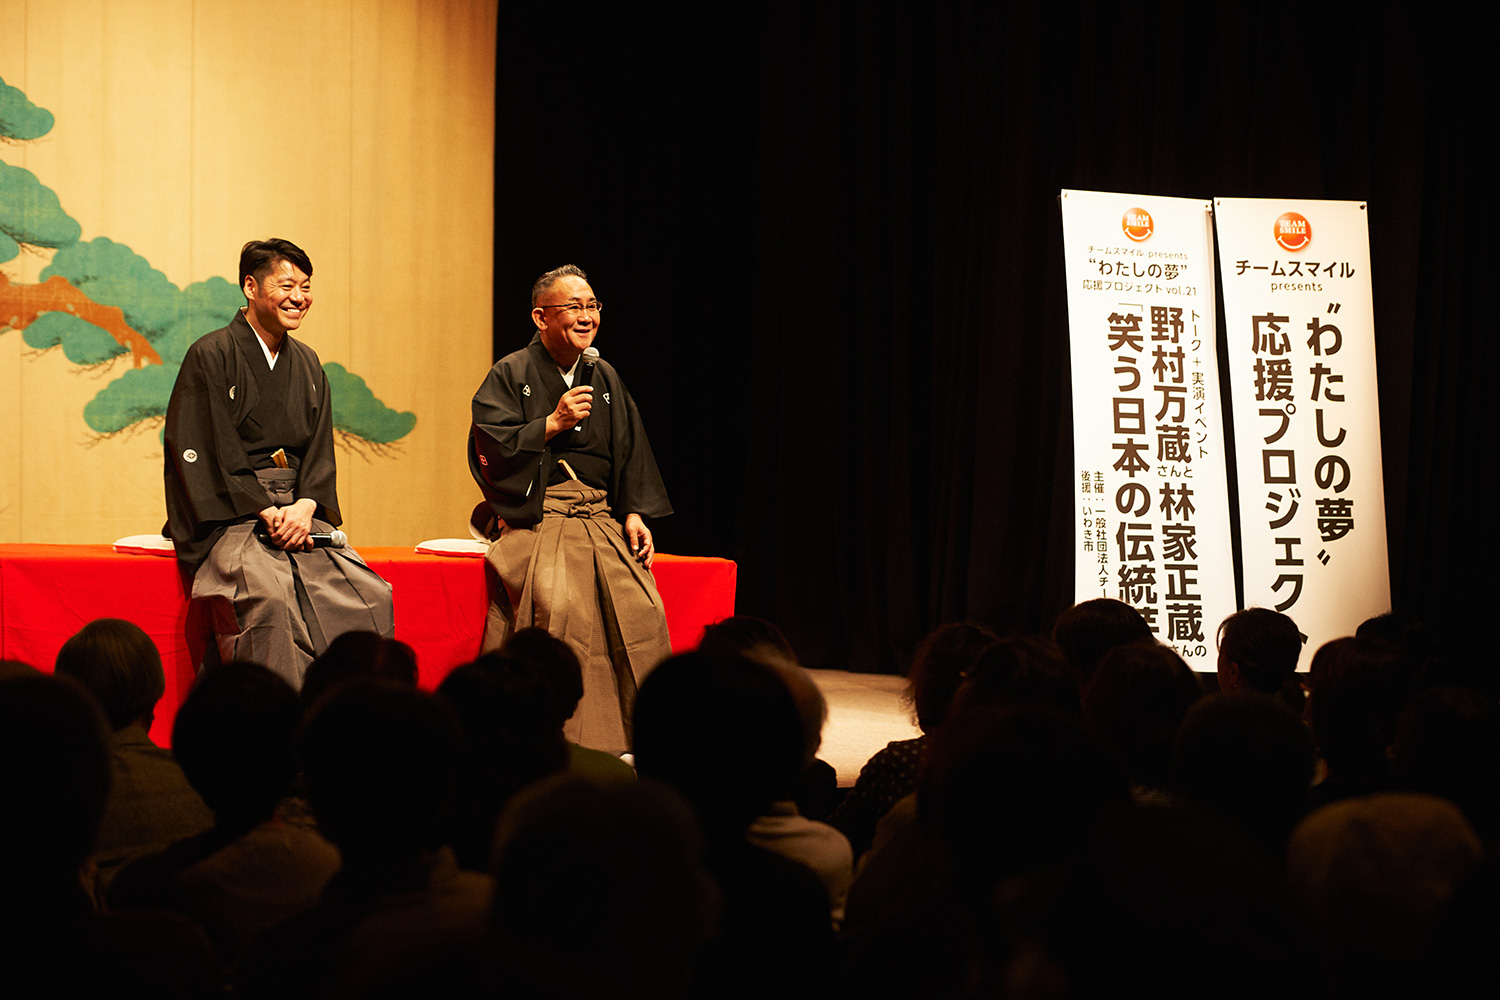 イベント開幕!! 野村万蔵さん（左）と林家正蔵さん（右）による軽快なトークに惹き込まれます。